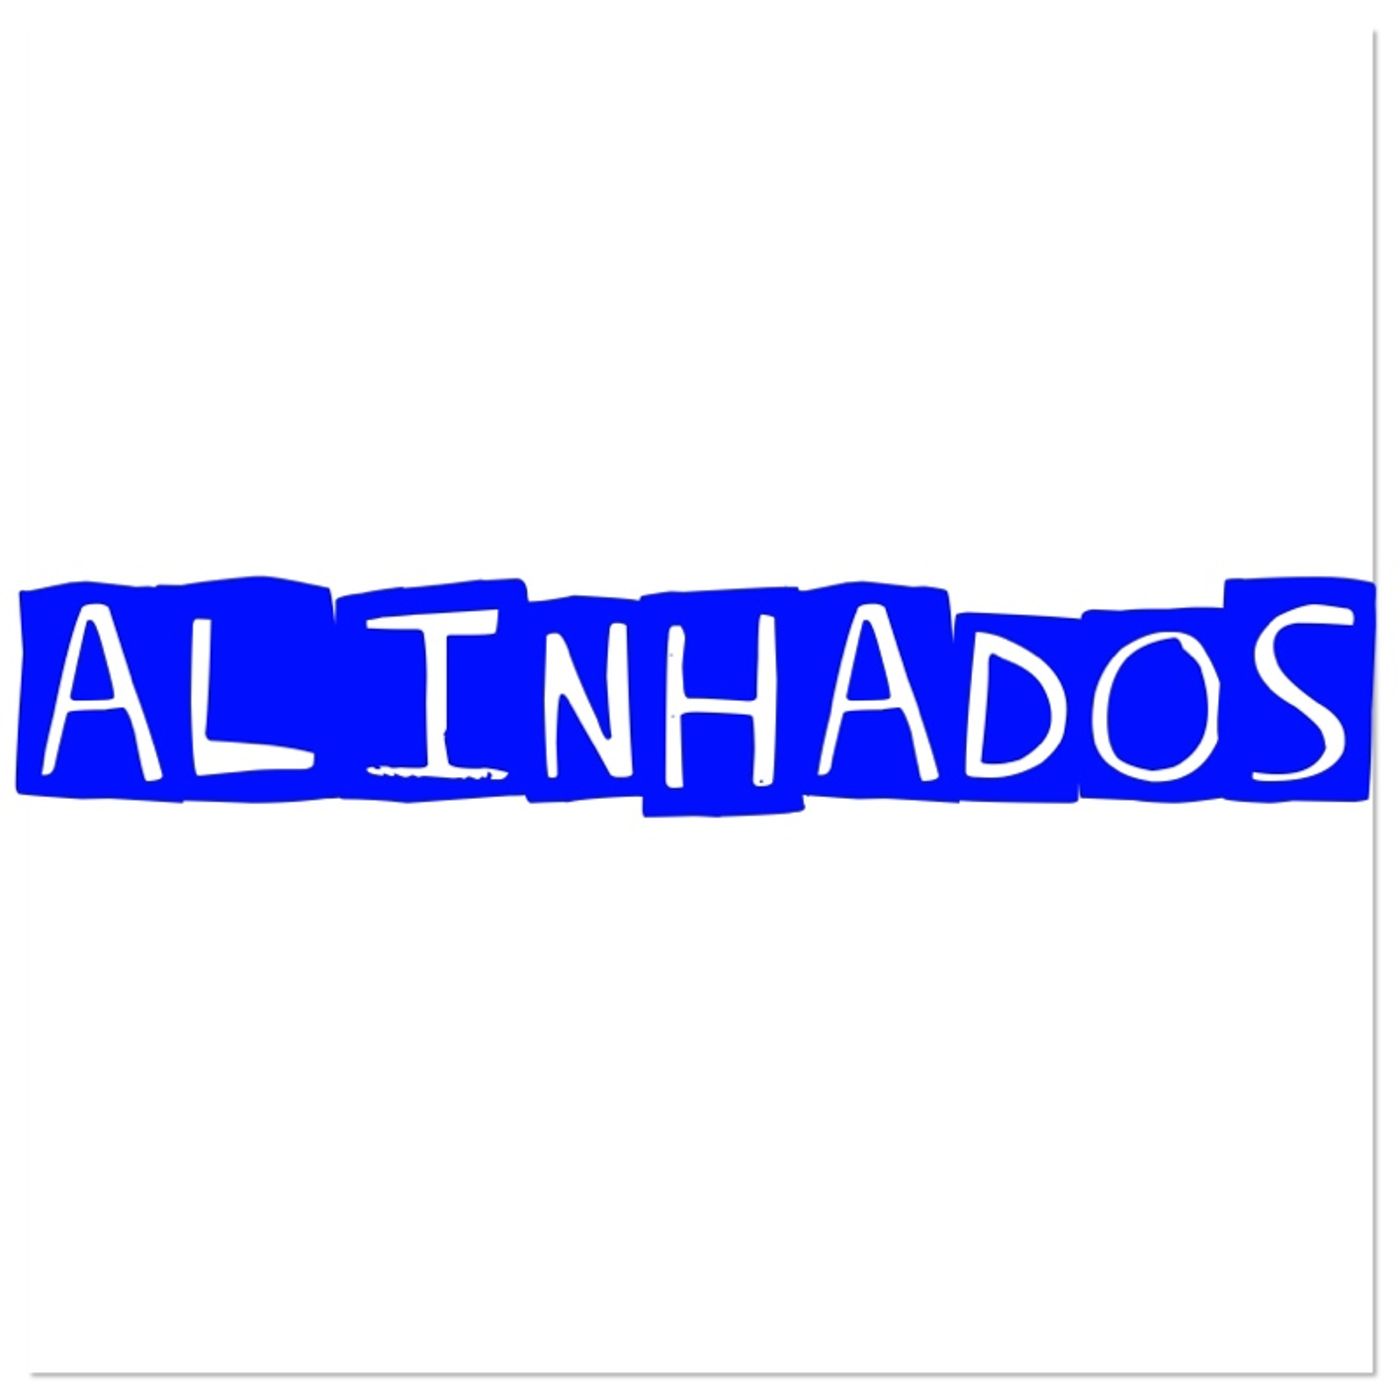 AlinhadosJC's show